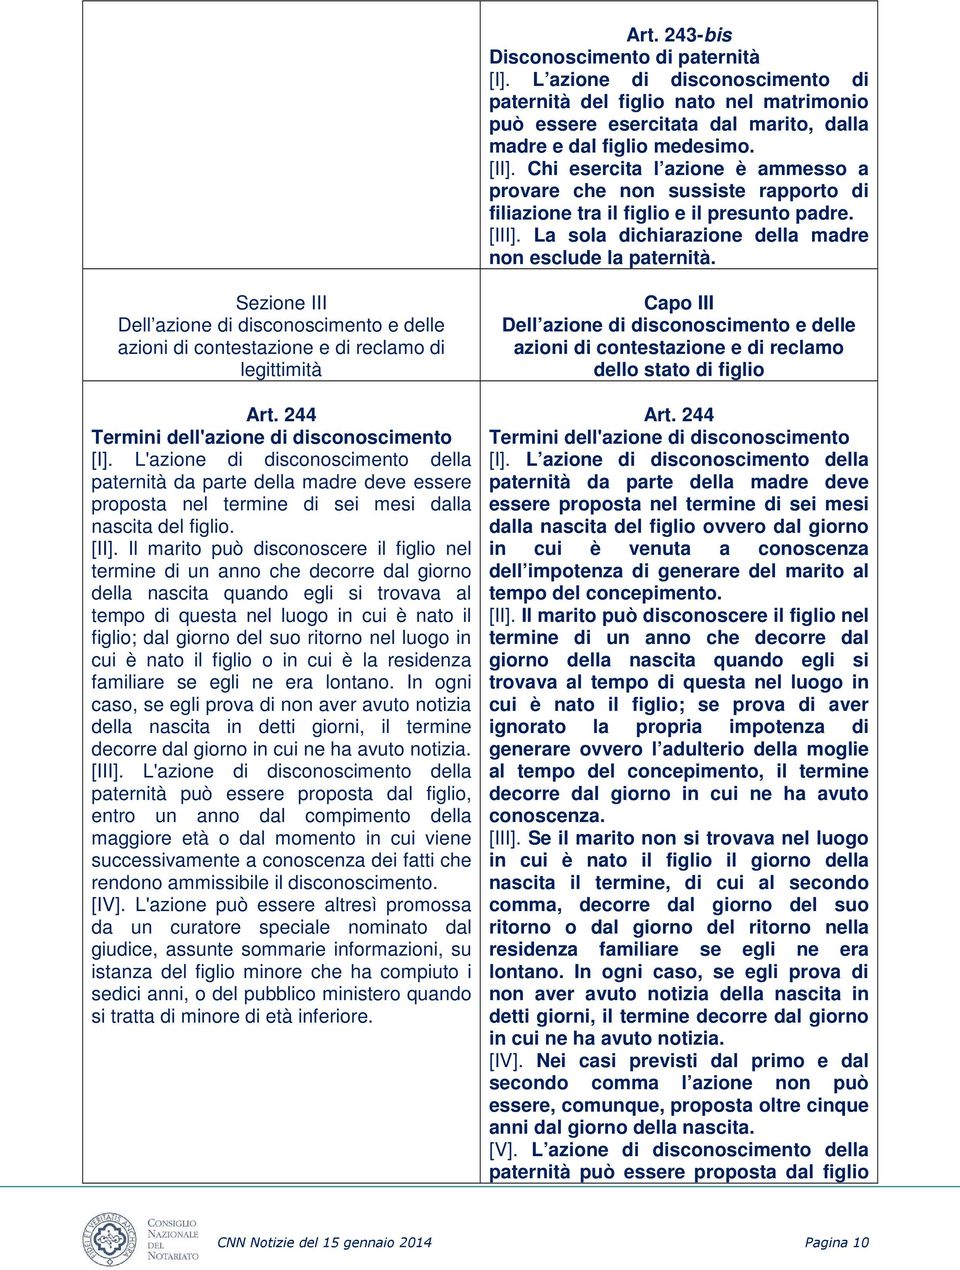 Sezione III Dell azione di disconoscimento e delle azioni di contestazione e di reclamo di legittimità Art. 244 Termini dell'azione di disconoscimento [I].